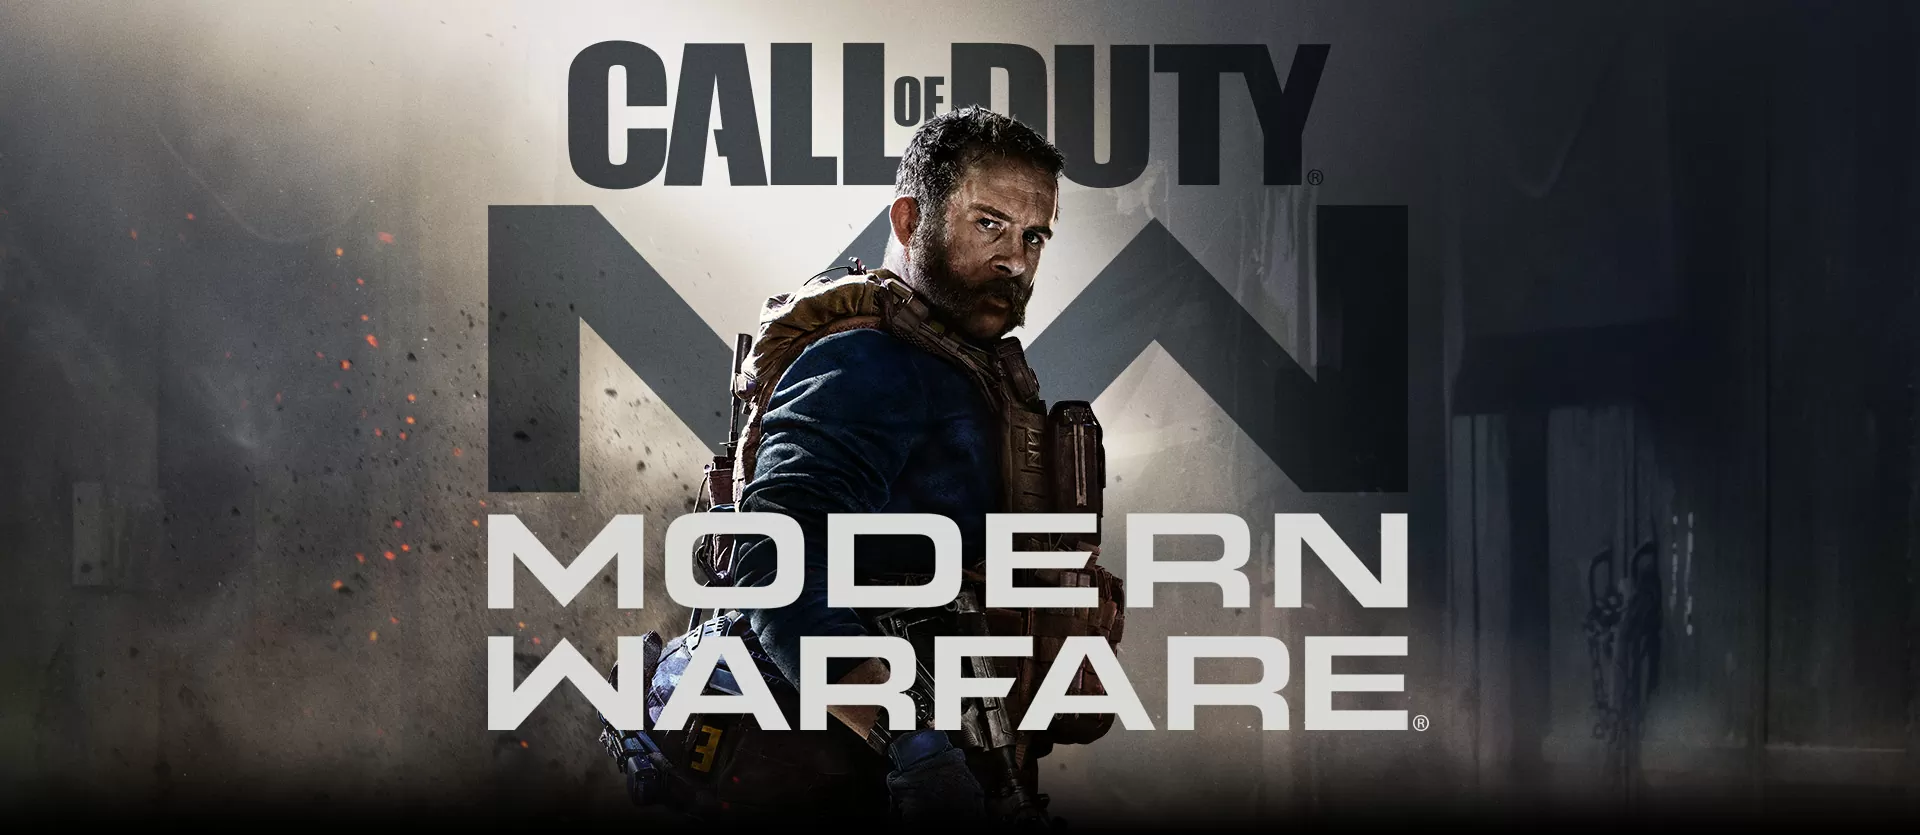 Call of Duty: Modern Warfare – La recensione del titolo reboot della saga Infinity Ward